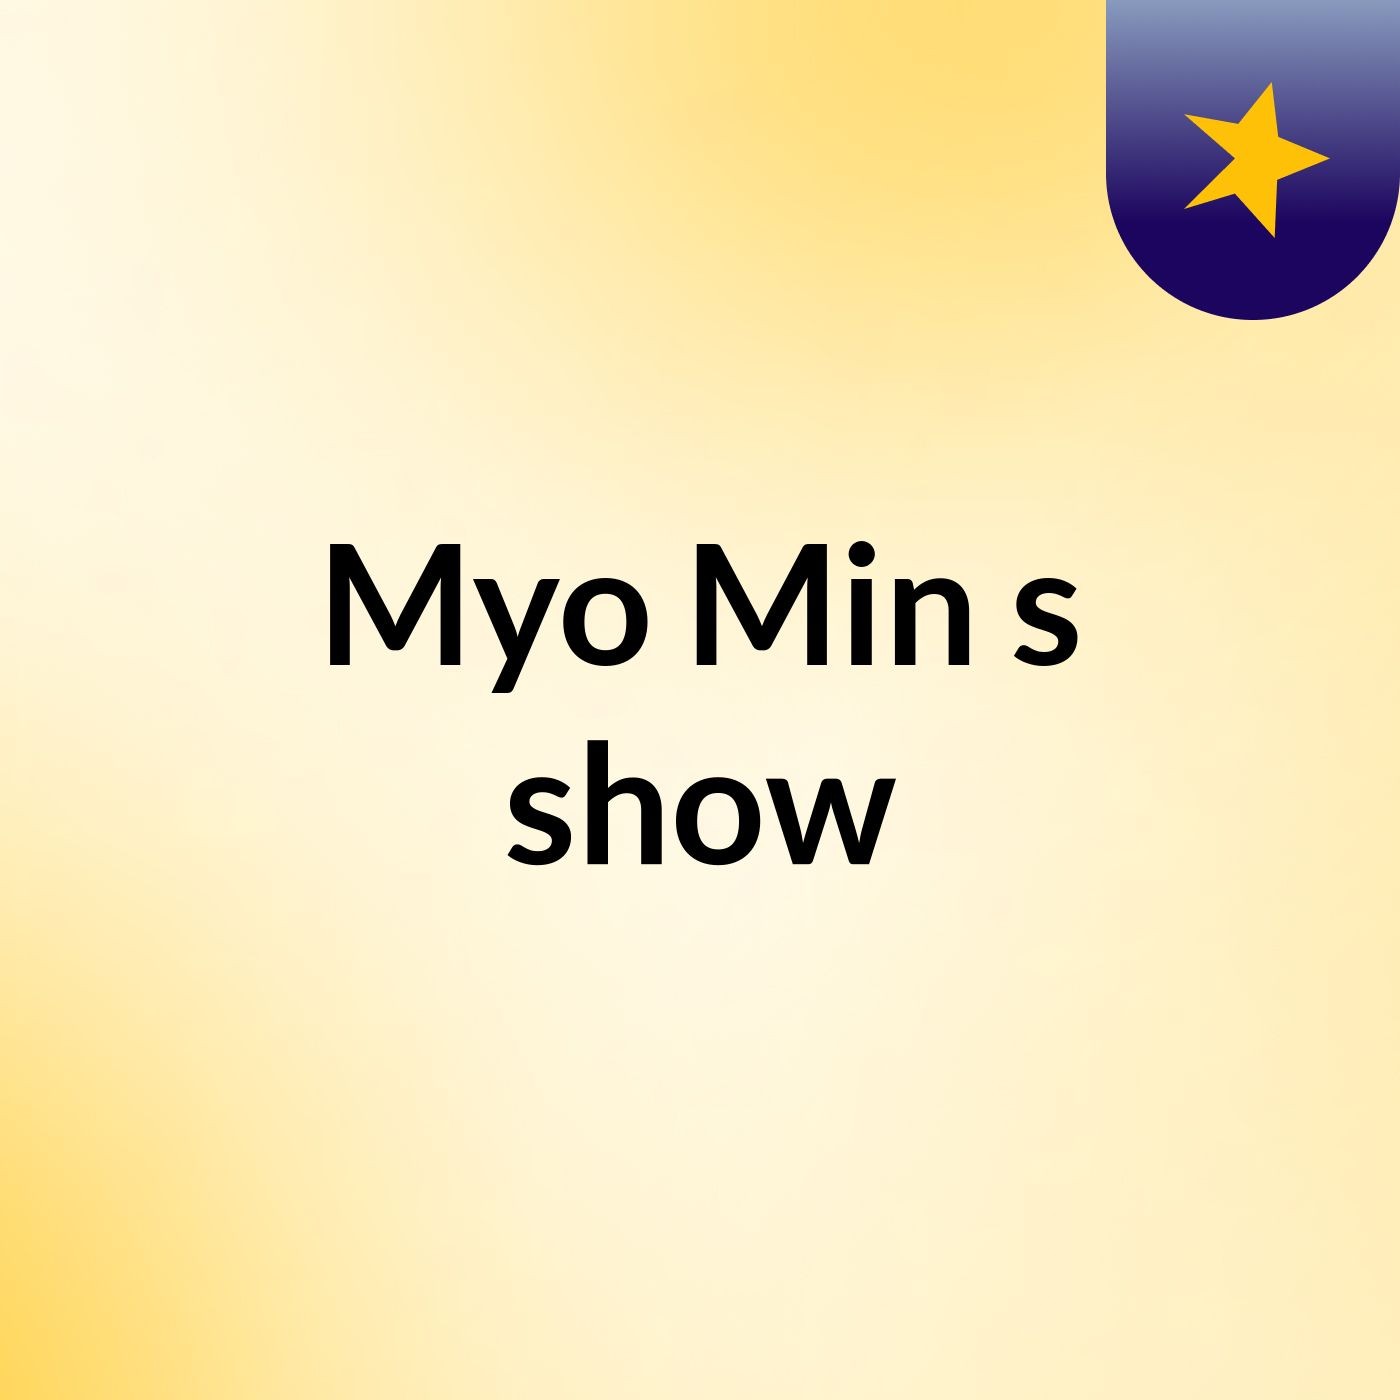 Myo Min's show